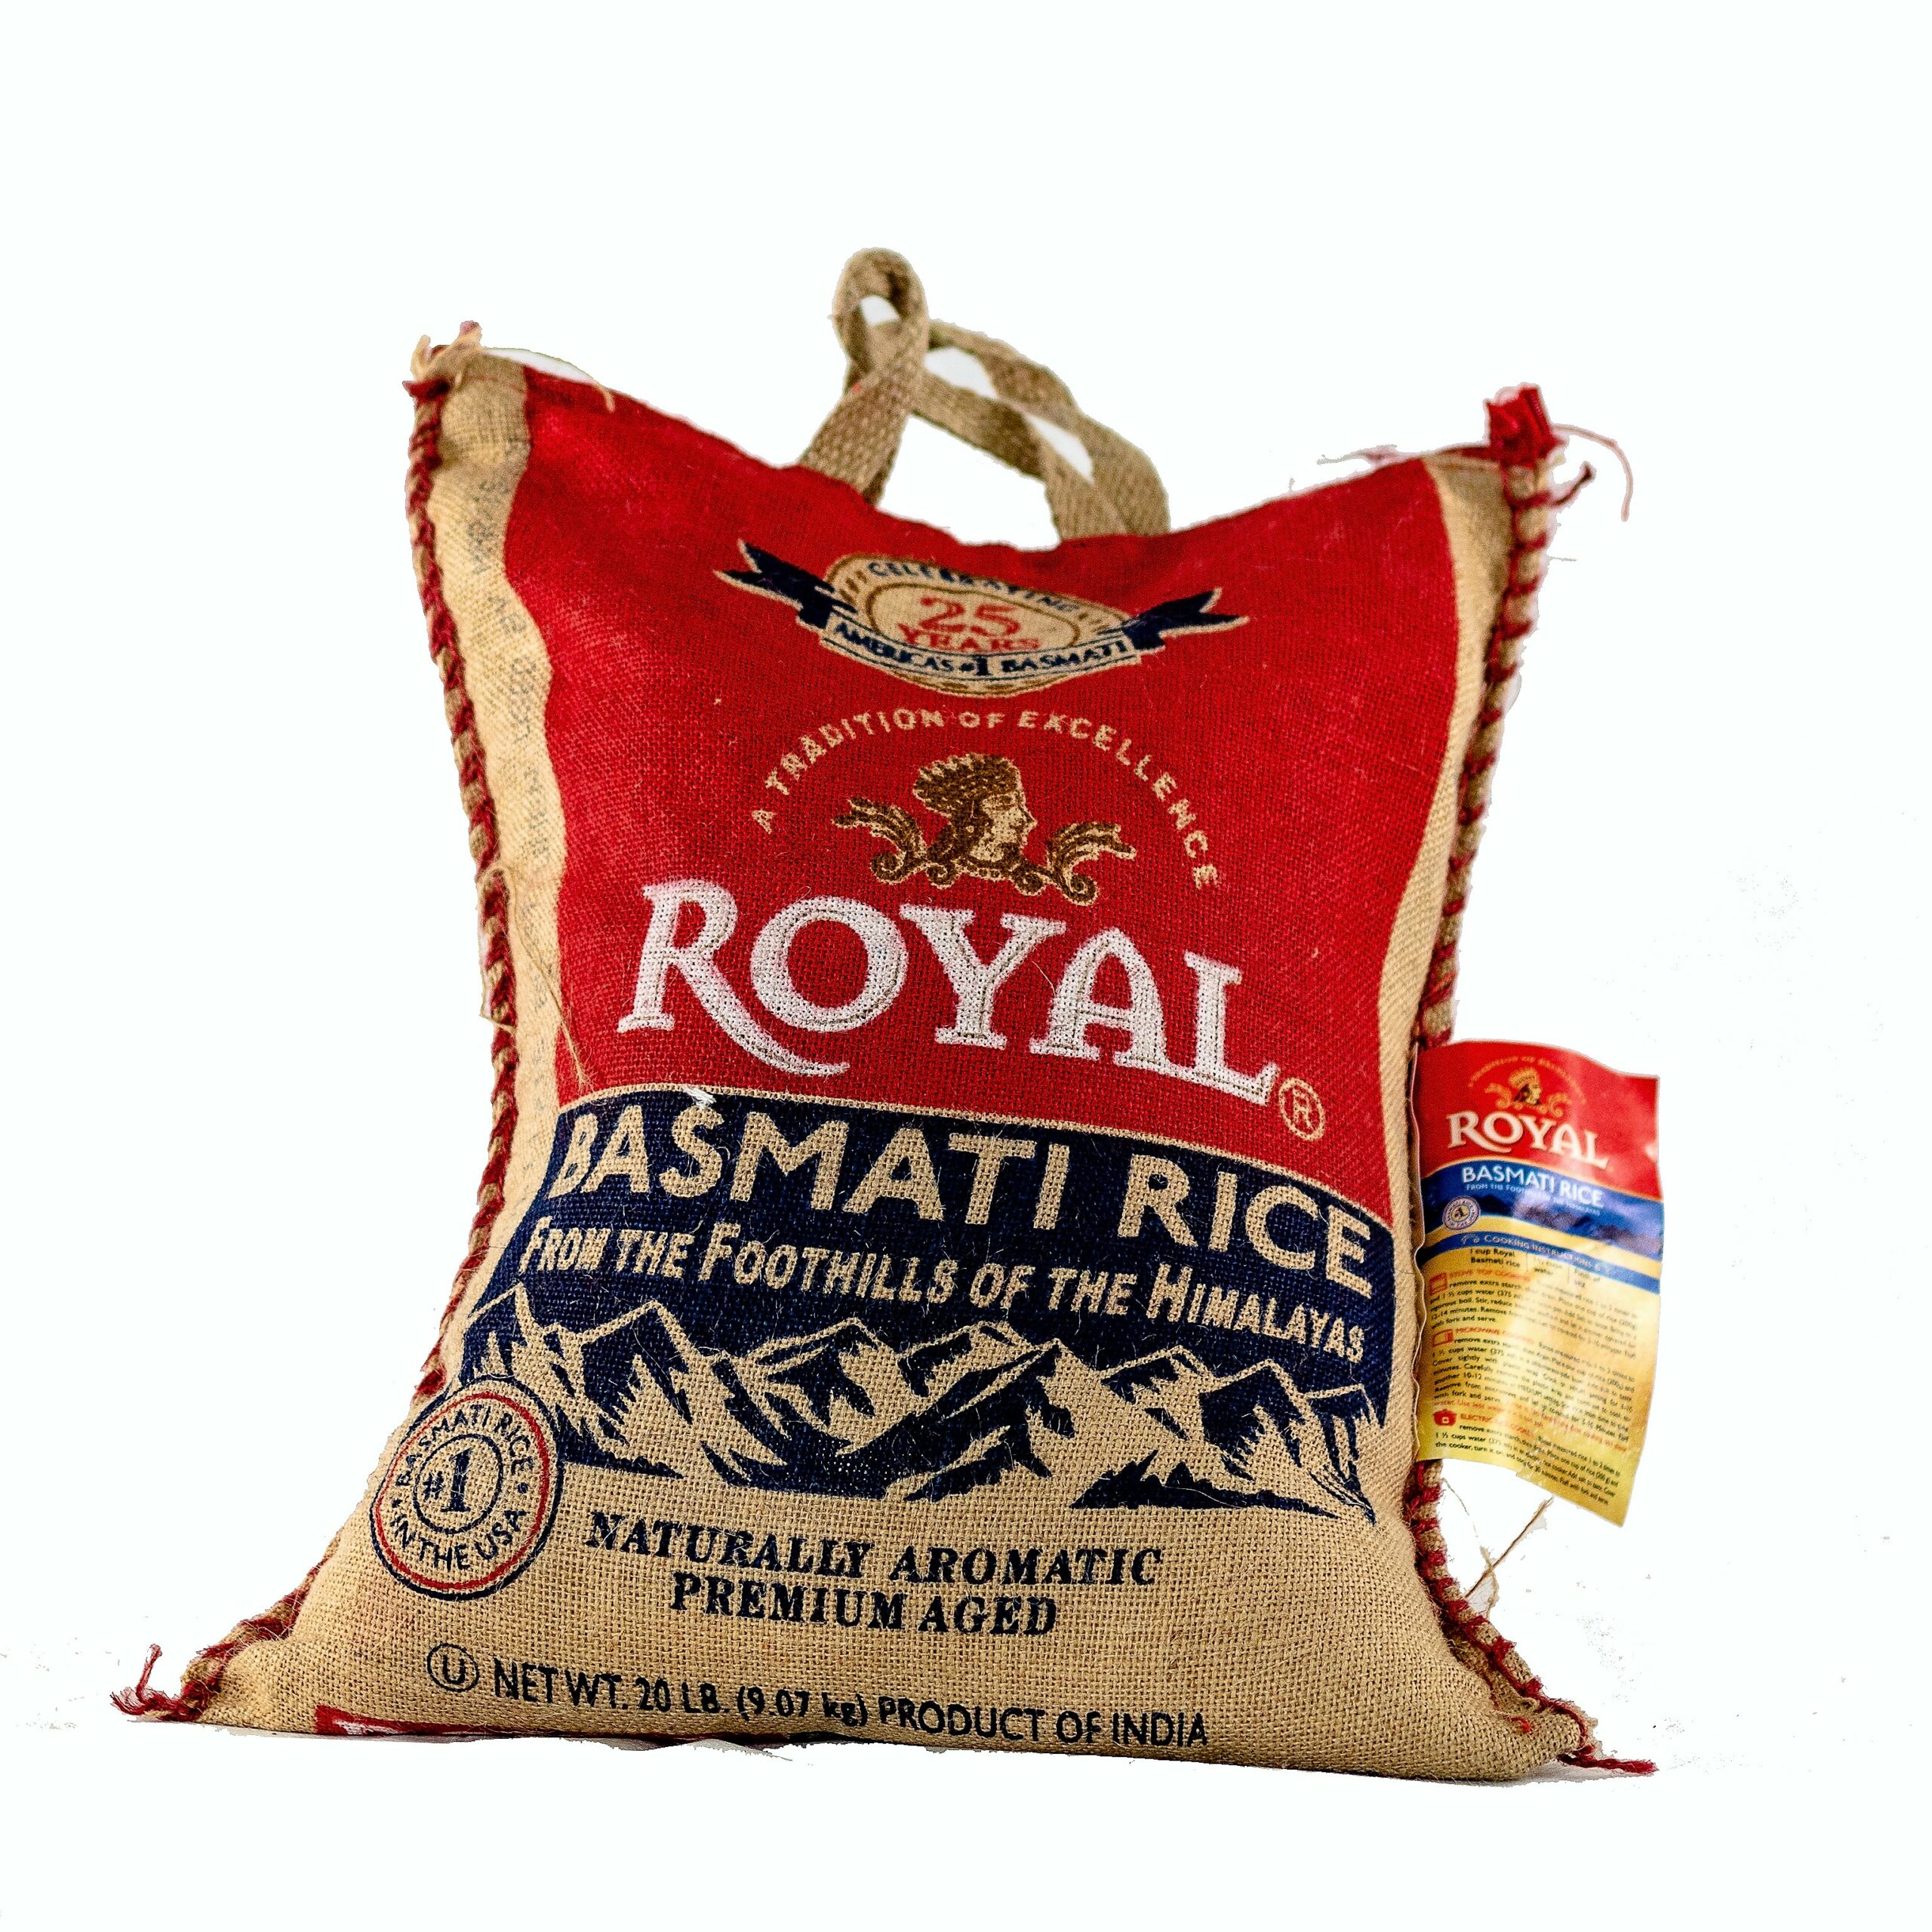 Rice 20. Premium Basmati рекламы. Abat Premium Basmati рекламы. Рис басмати и семга. Basmati Murmur.